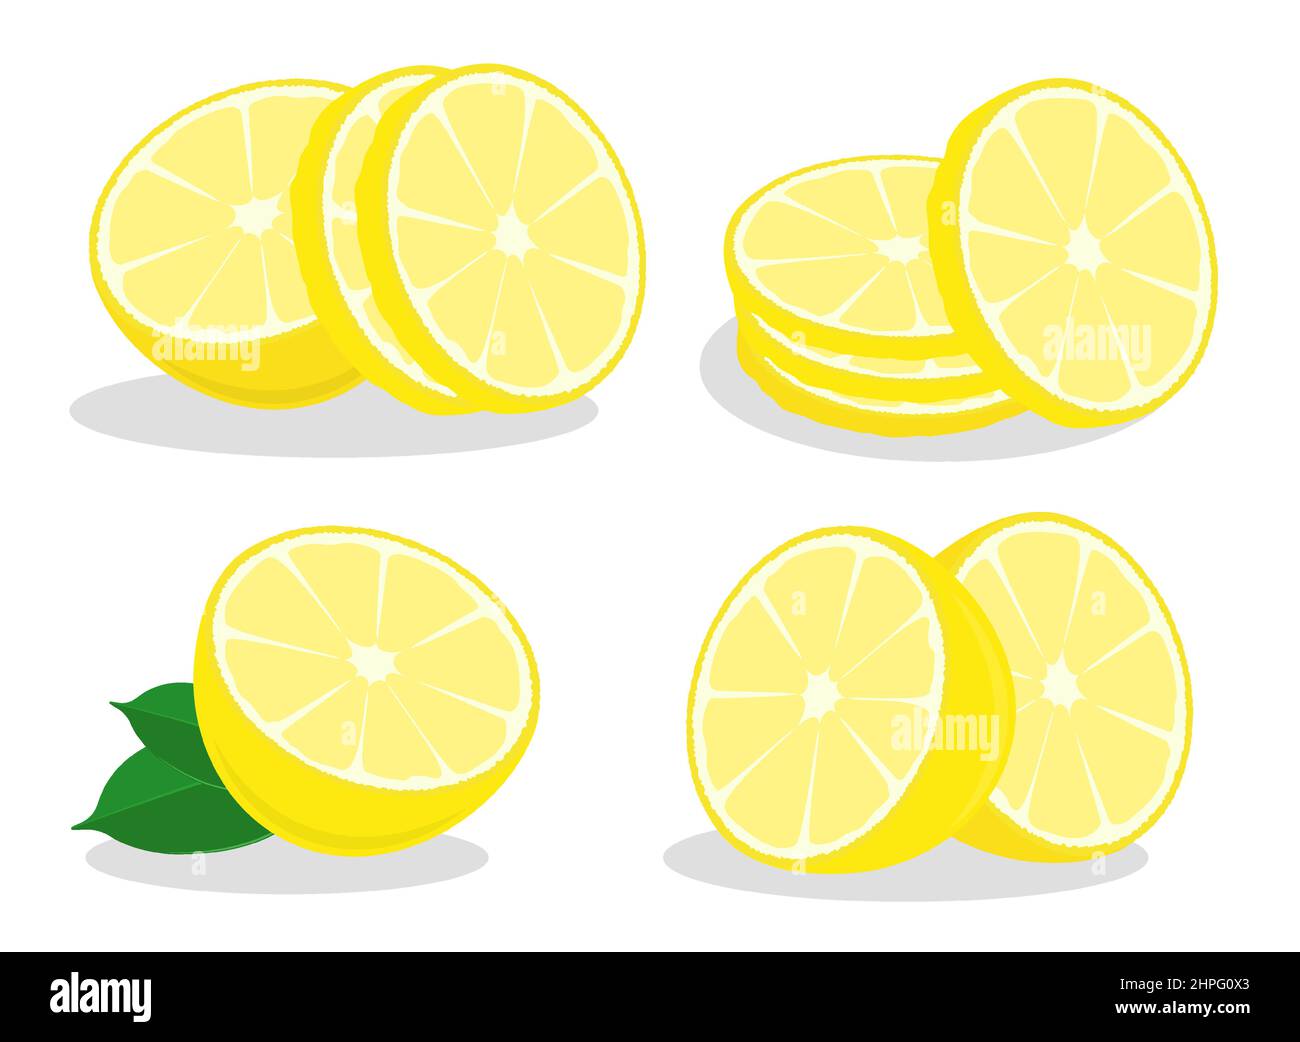 Tranches de citron avec anneaux de zeste. Citron avec zeste haché. Vecteur de couleur de style dessin animé isolé sur fond blanc Illustration de Vecteur